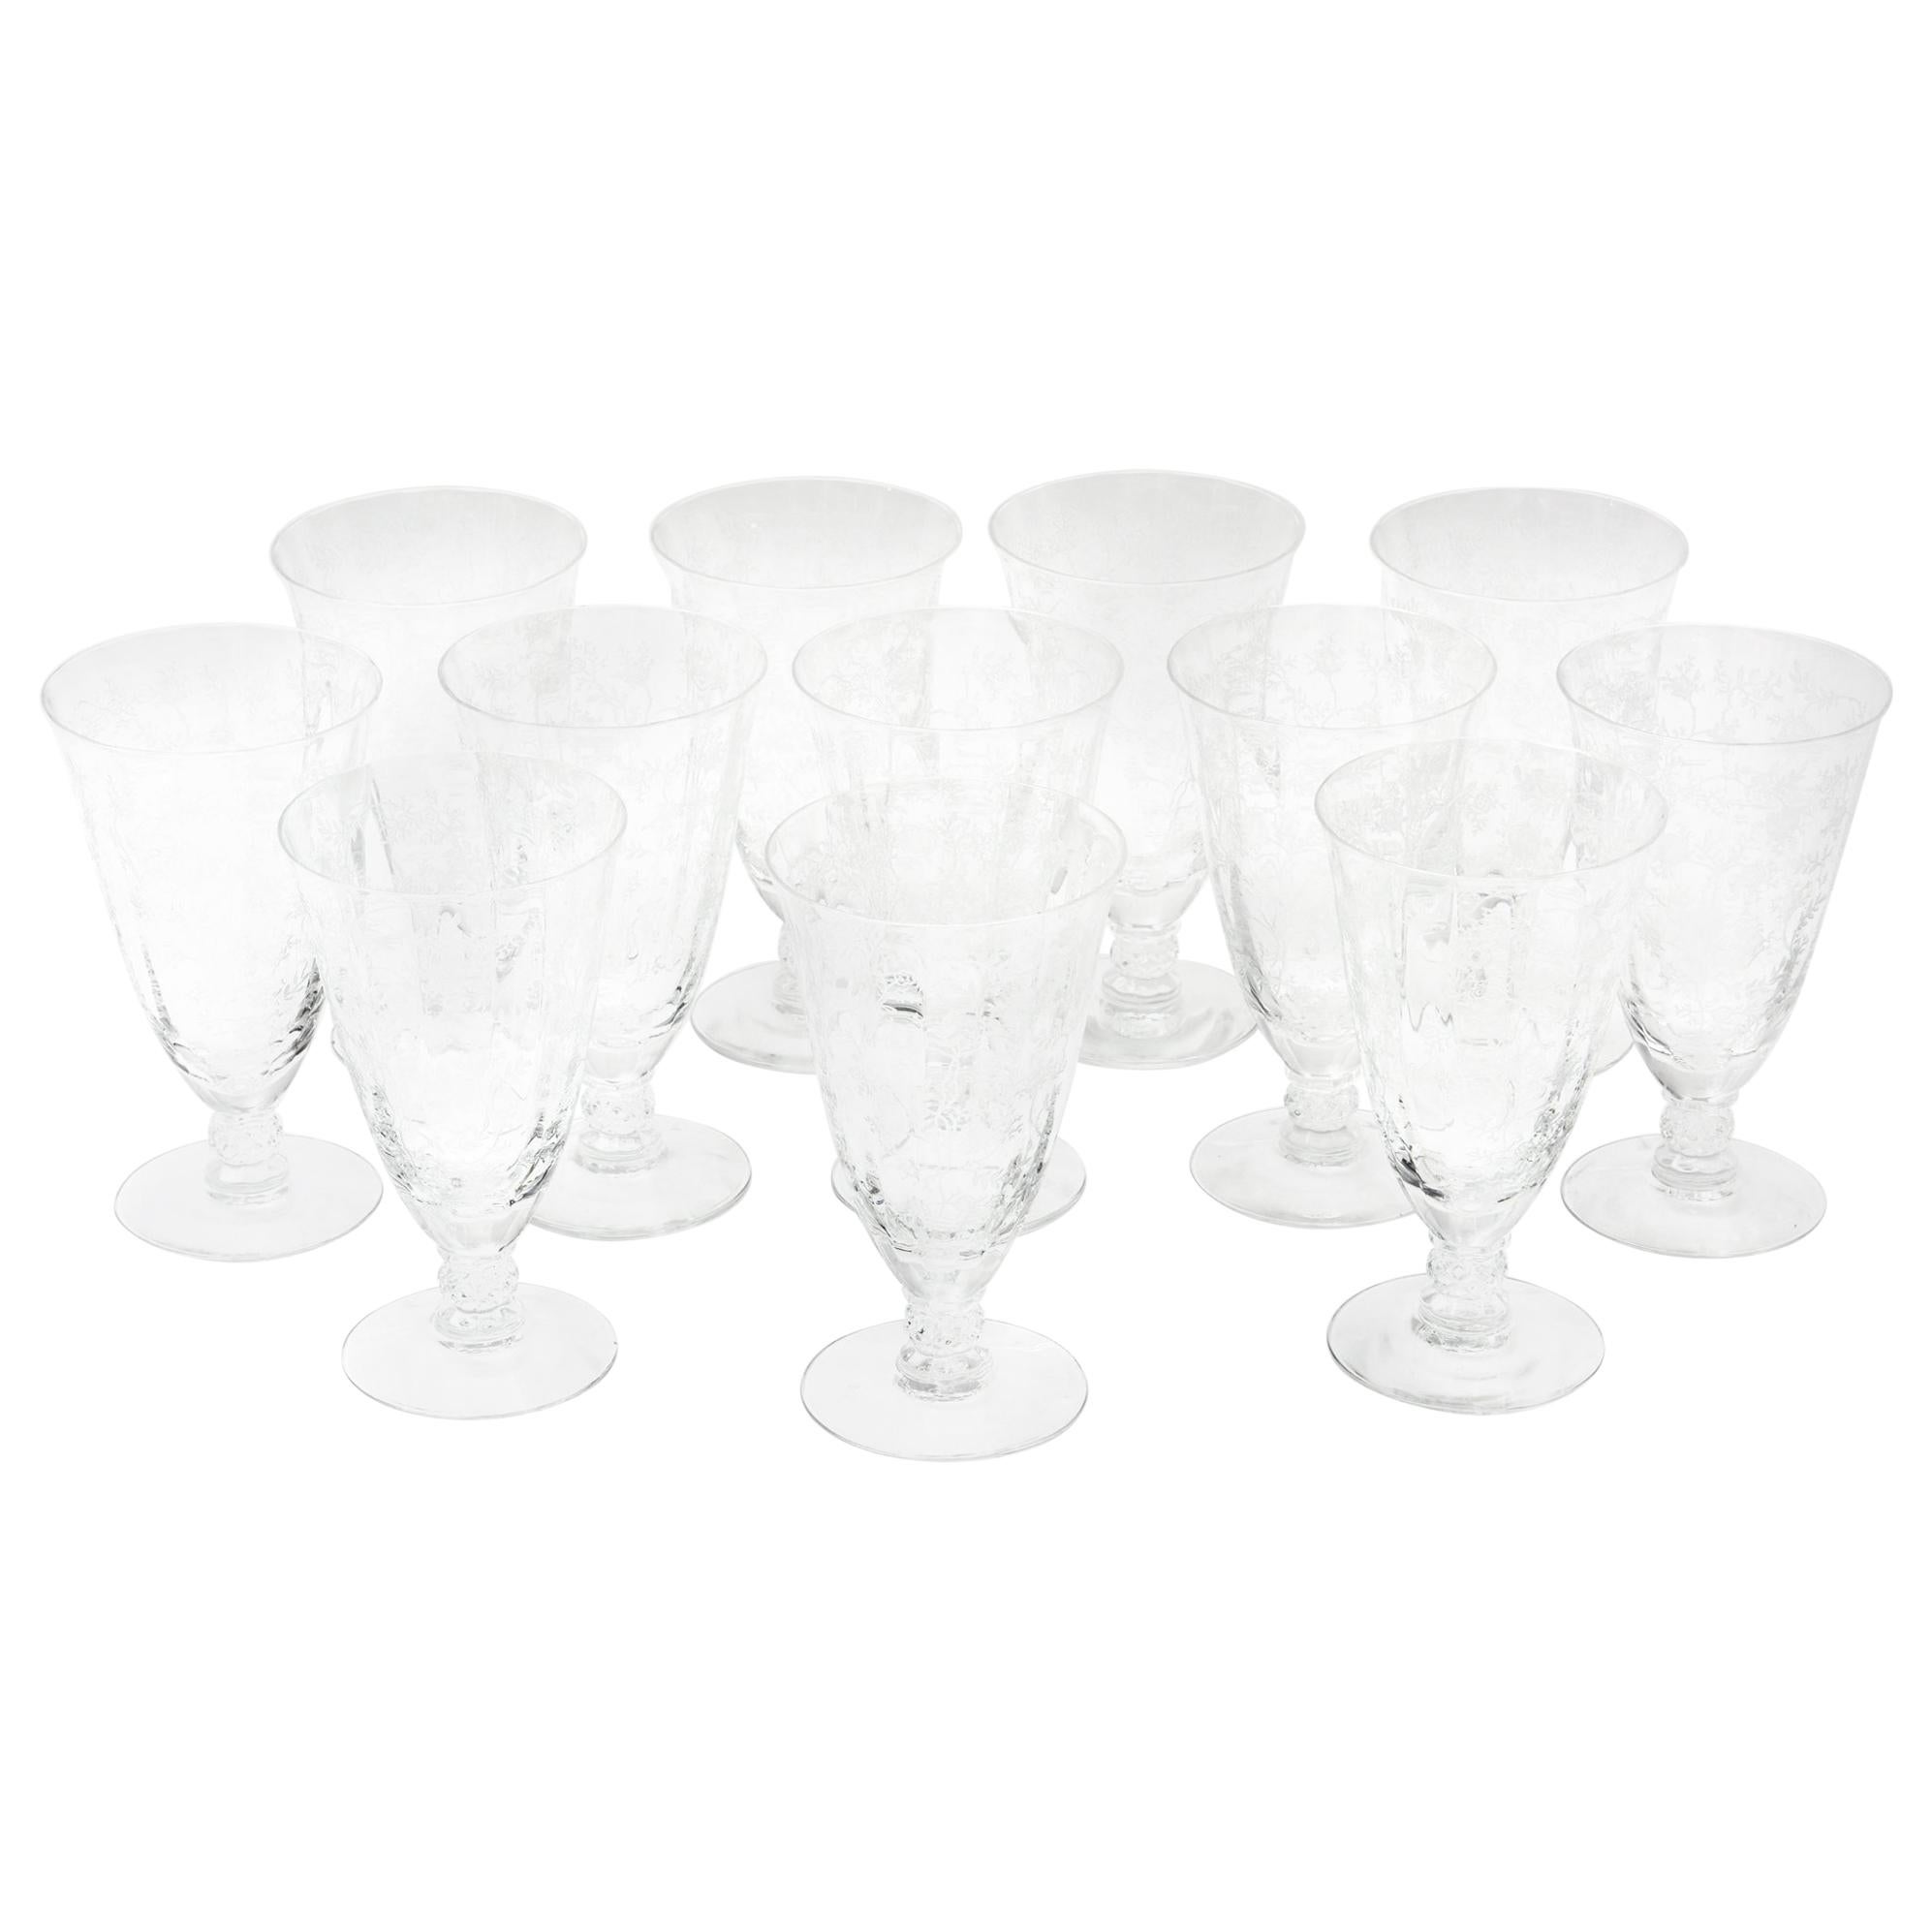 Set of 12 Iced Tea Glasses, Vintage Etched Design